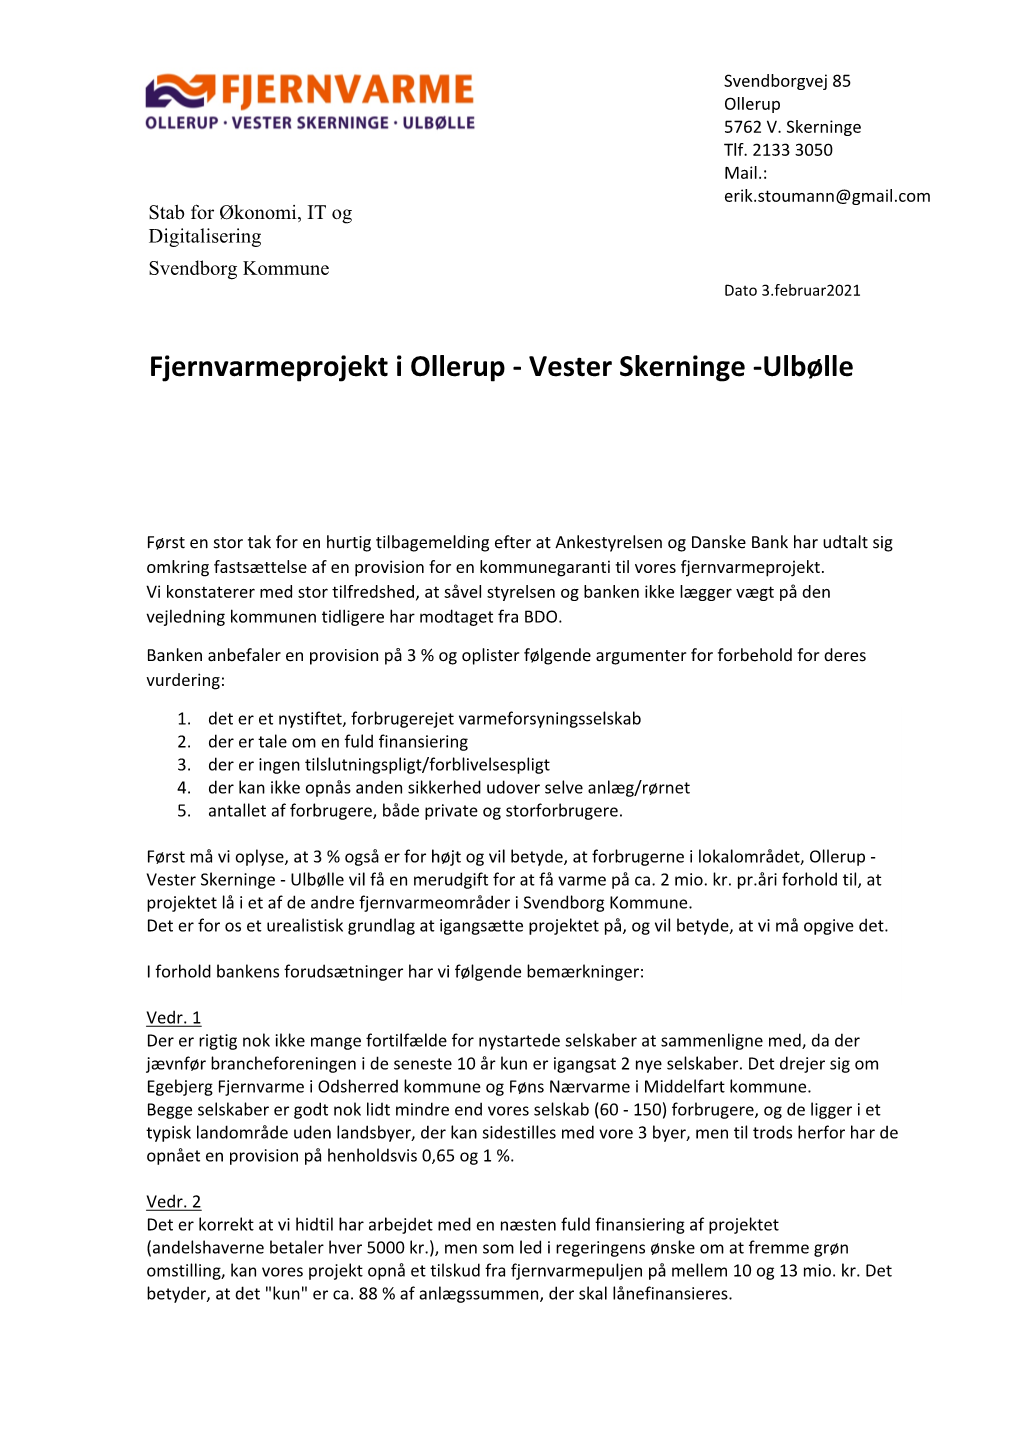 Fjernvarmeprojekt I Ollerup - Vester Skerninge -Ulbølle